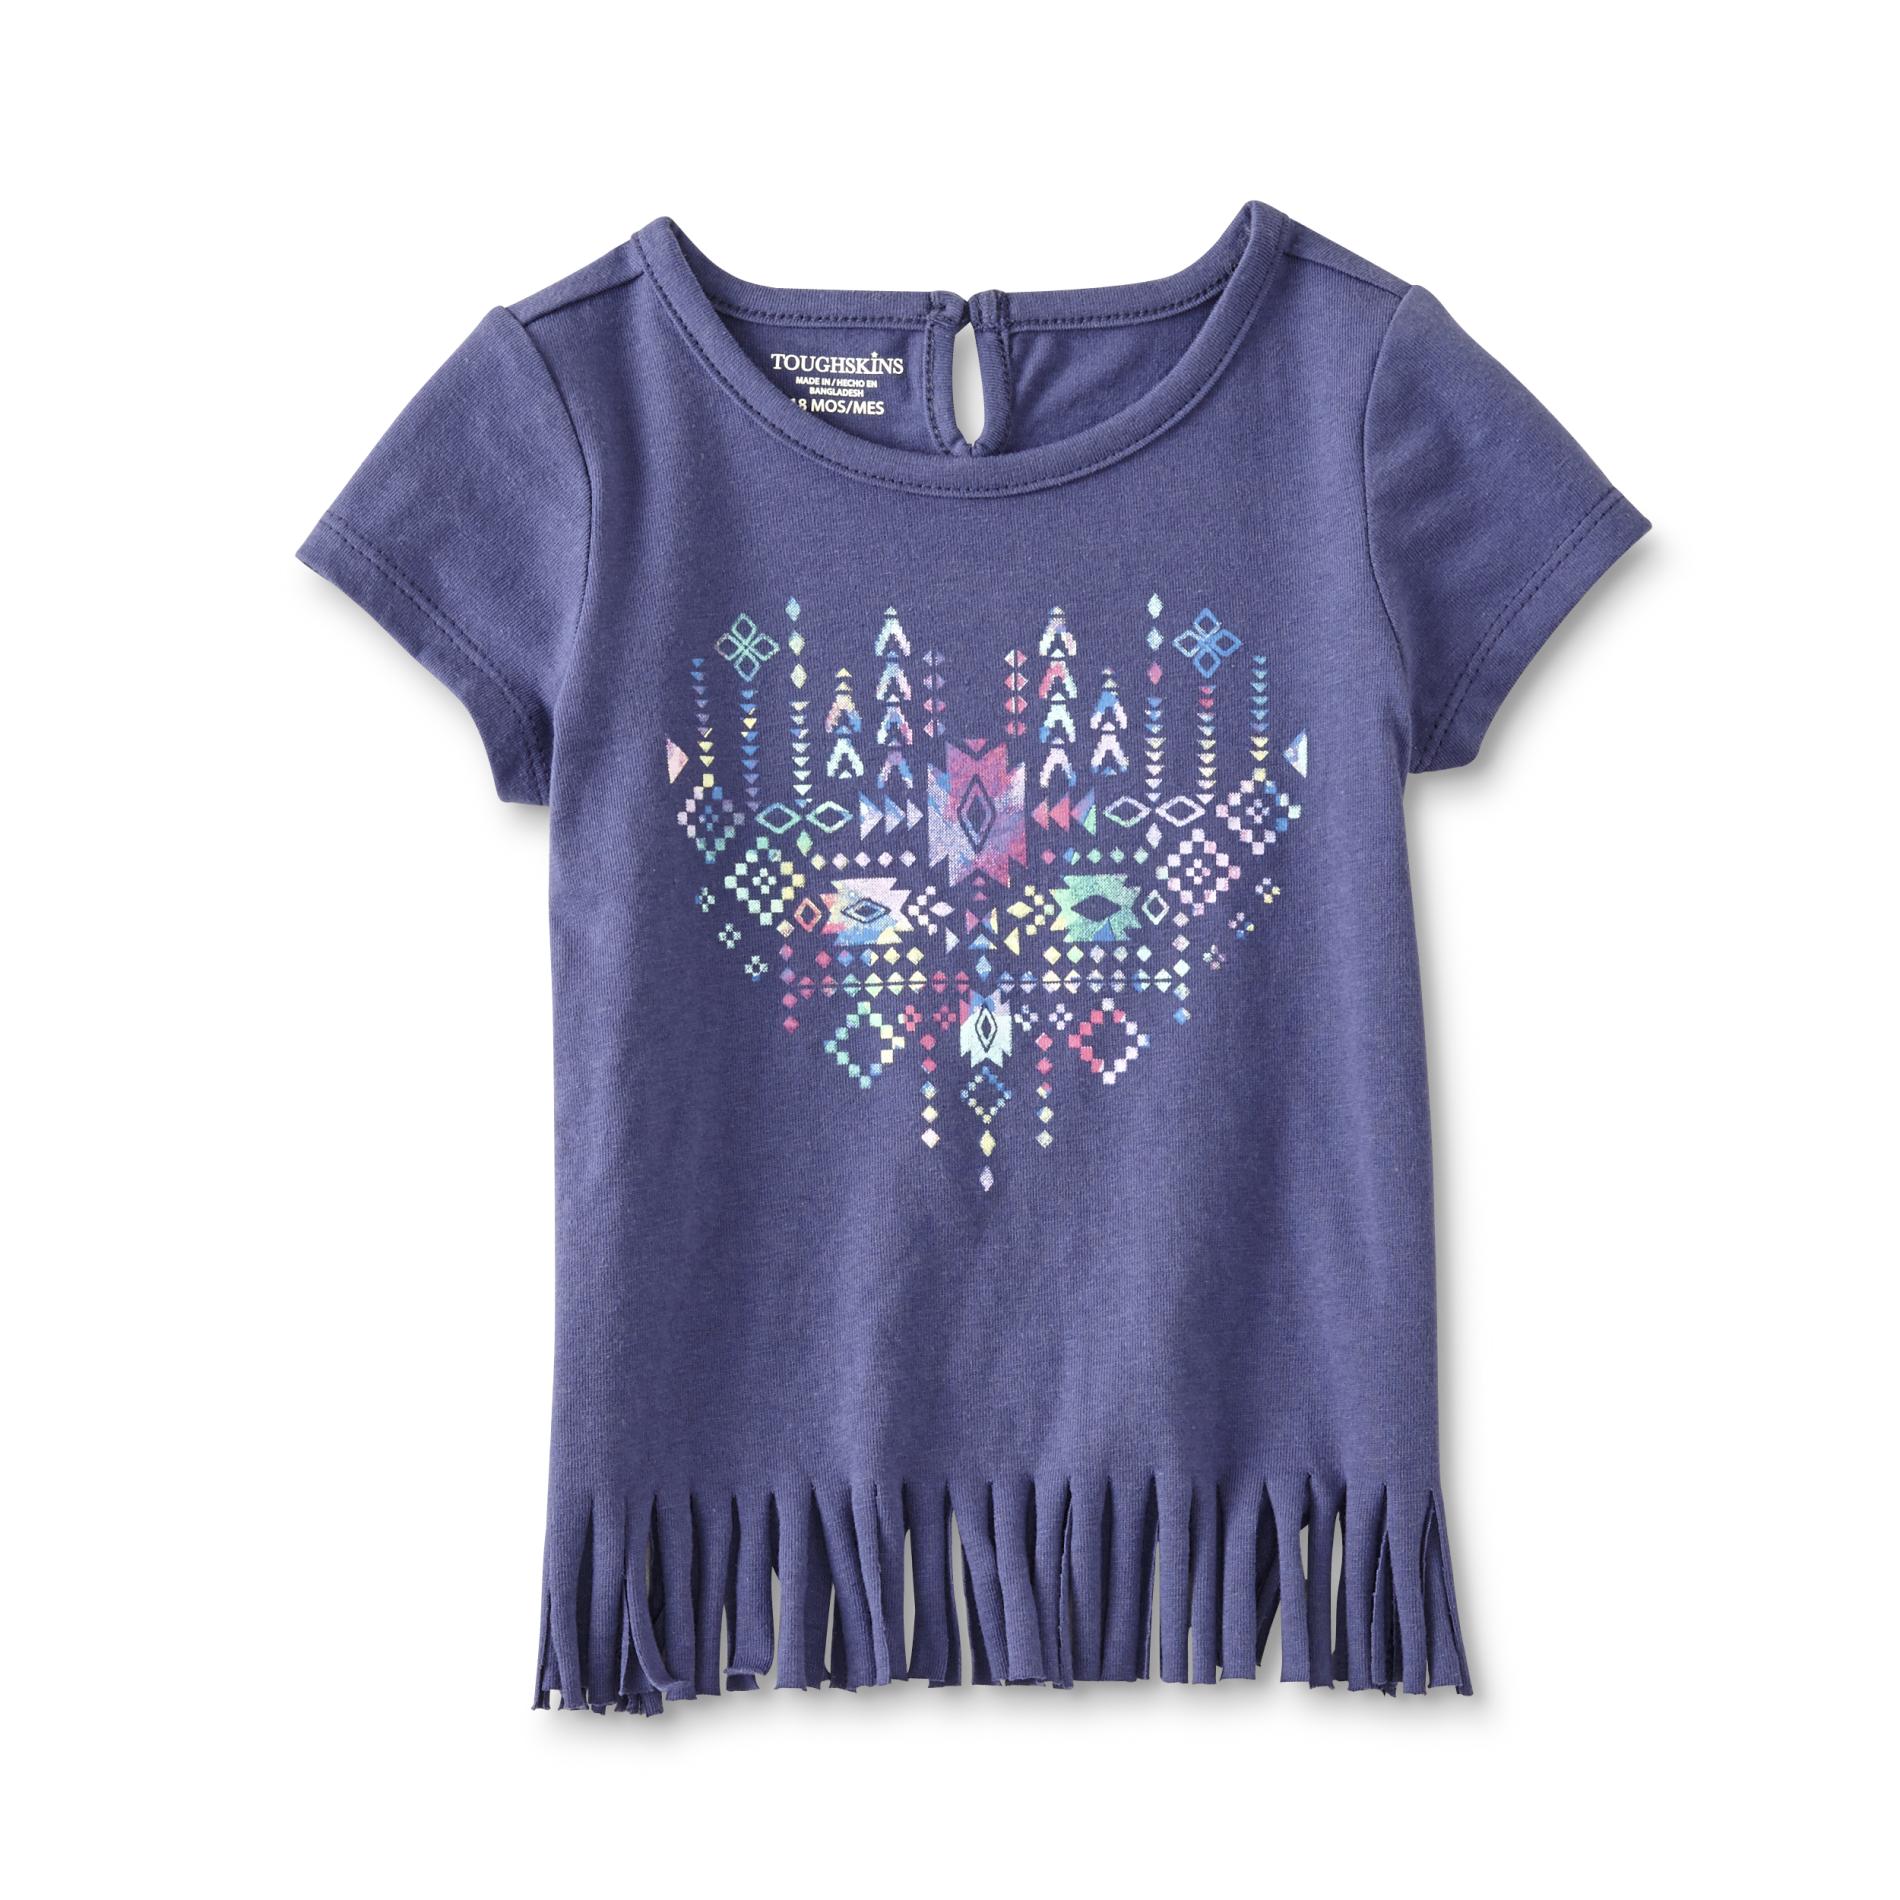 Toughskins Infant Girls' Fringe T-Shirt - Tribal Heart